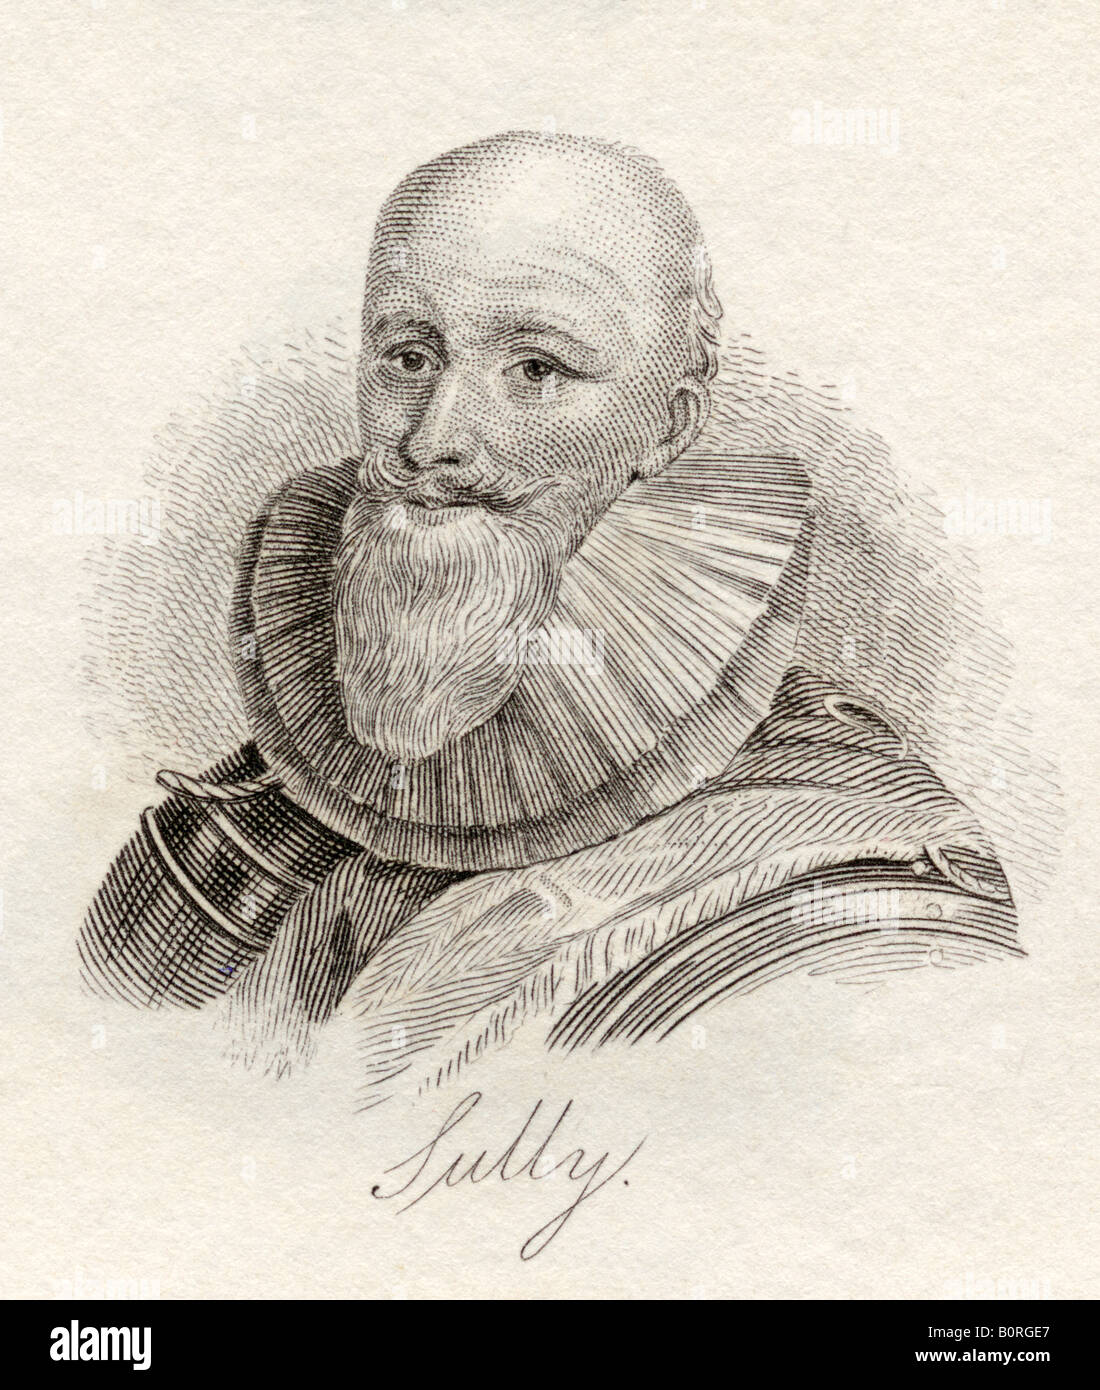 Maximilien Béthune, Duc de Sully, 1559 - 1641, alias Prince souverain d'Henrichemont et de Bosbelle. Soldat, ministre français et conseiller de Henry IV Banque D'Images